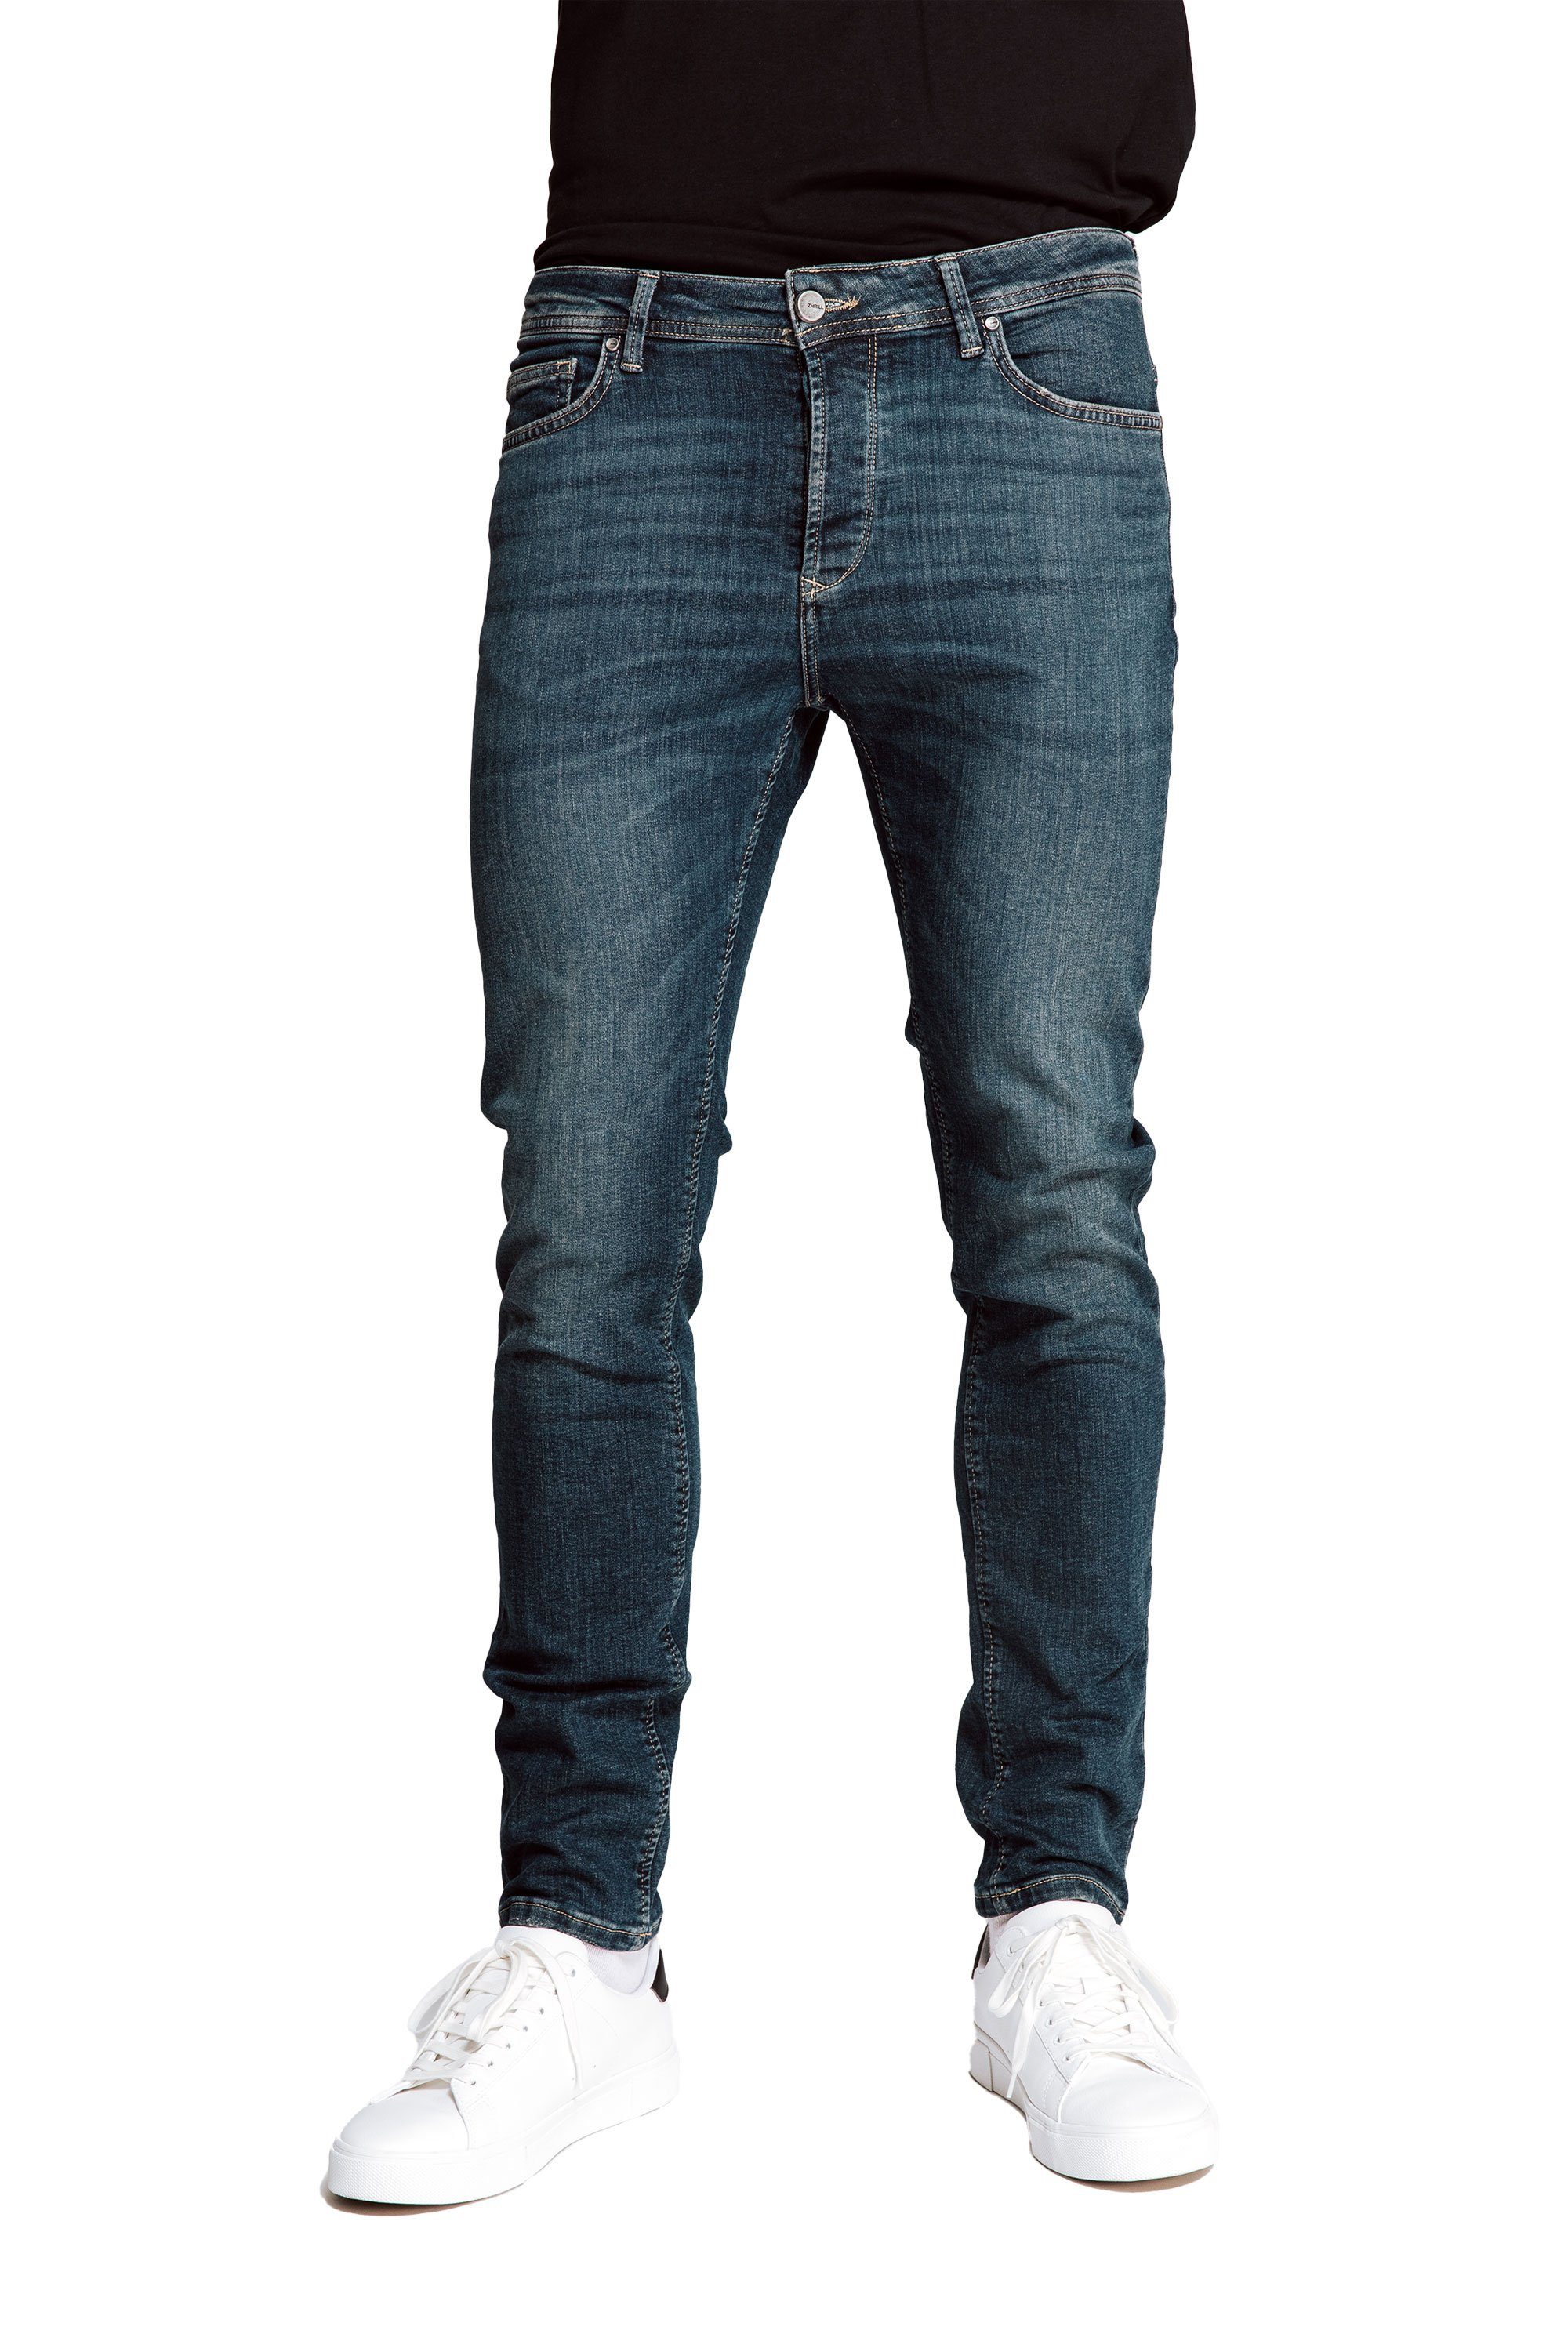 Zhrill Jeans LUCAS angenehmer 5-Pocket-Jeans Tragekomfort Blue